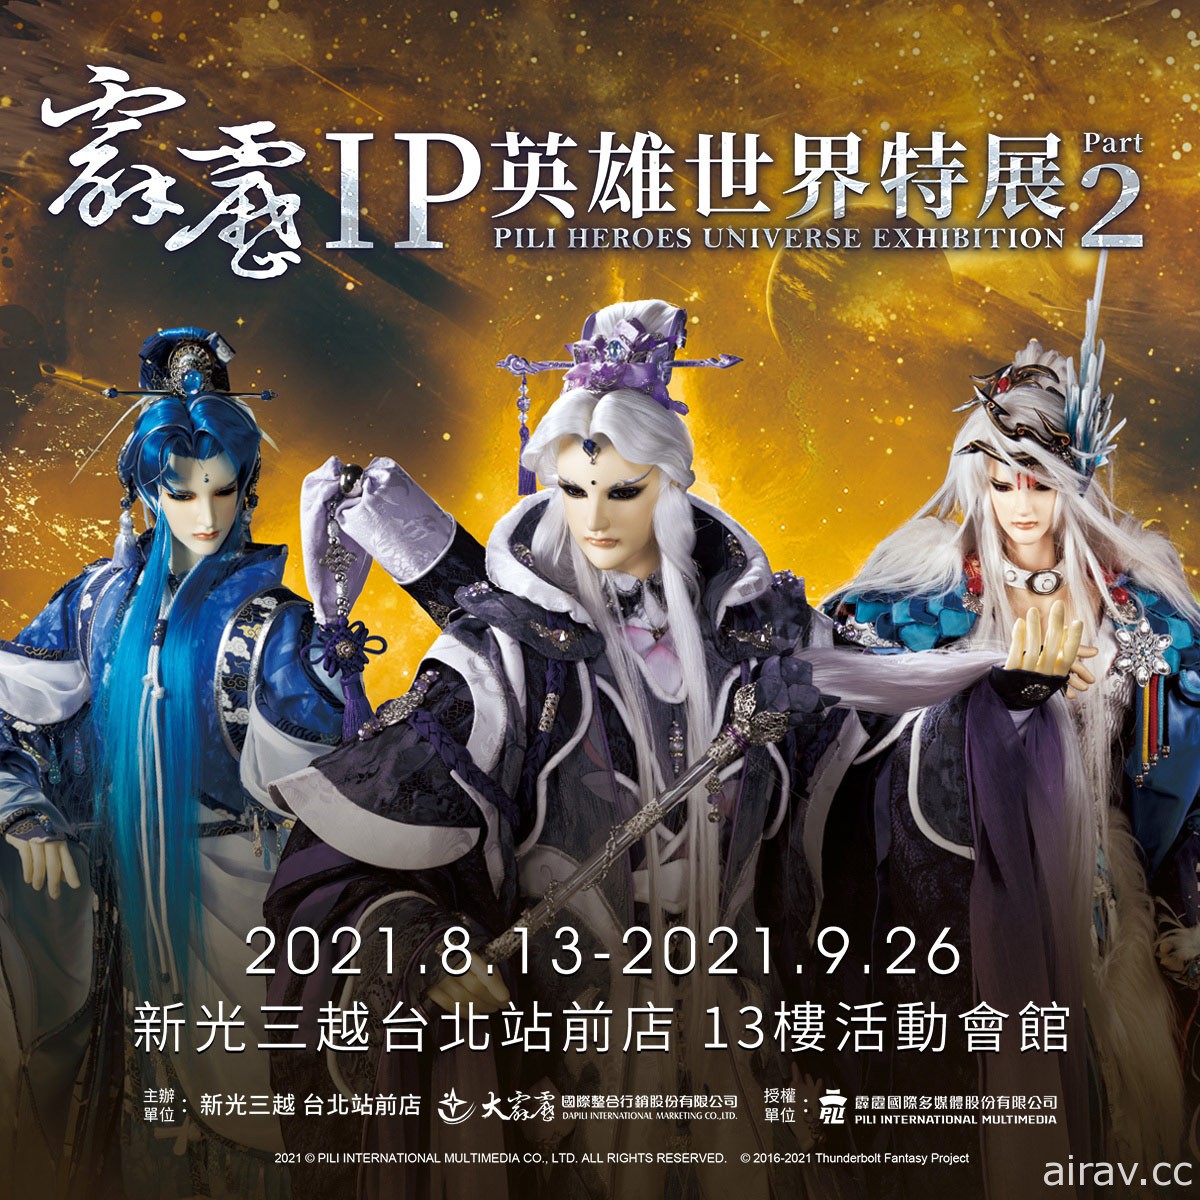 「霹靂 IP 英雄世界特展 Part.2」將自 8 月 13 日起新光台北站前店登場